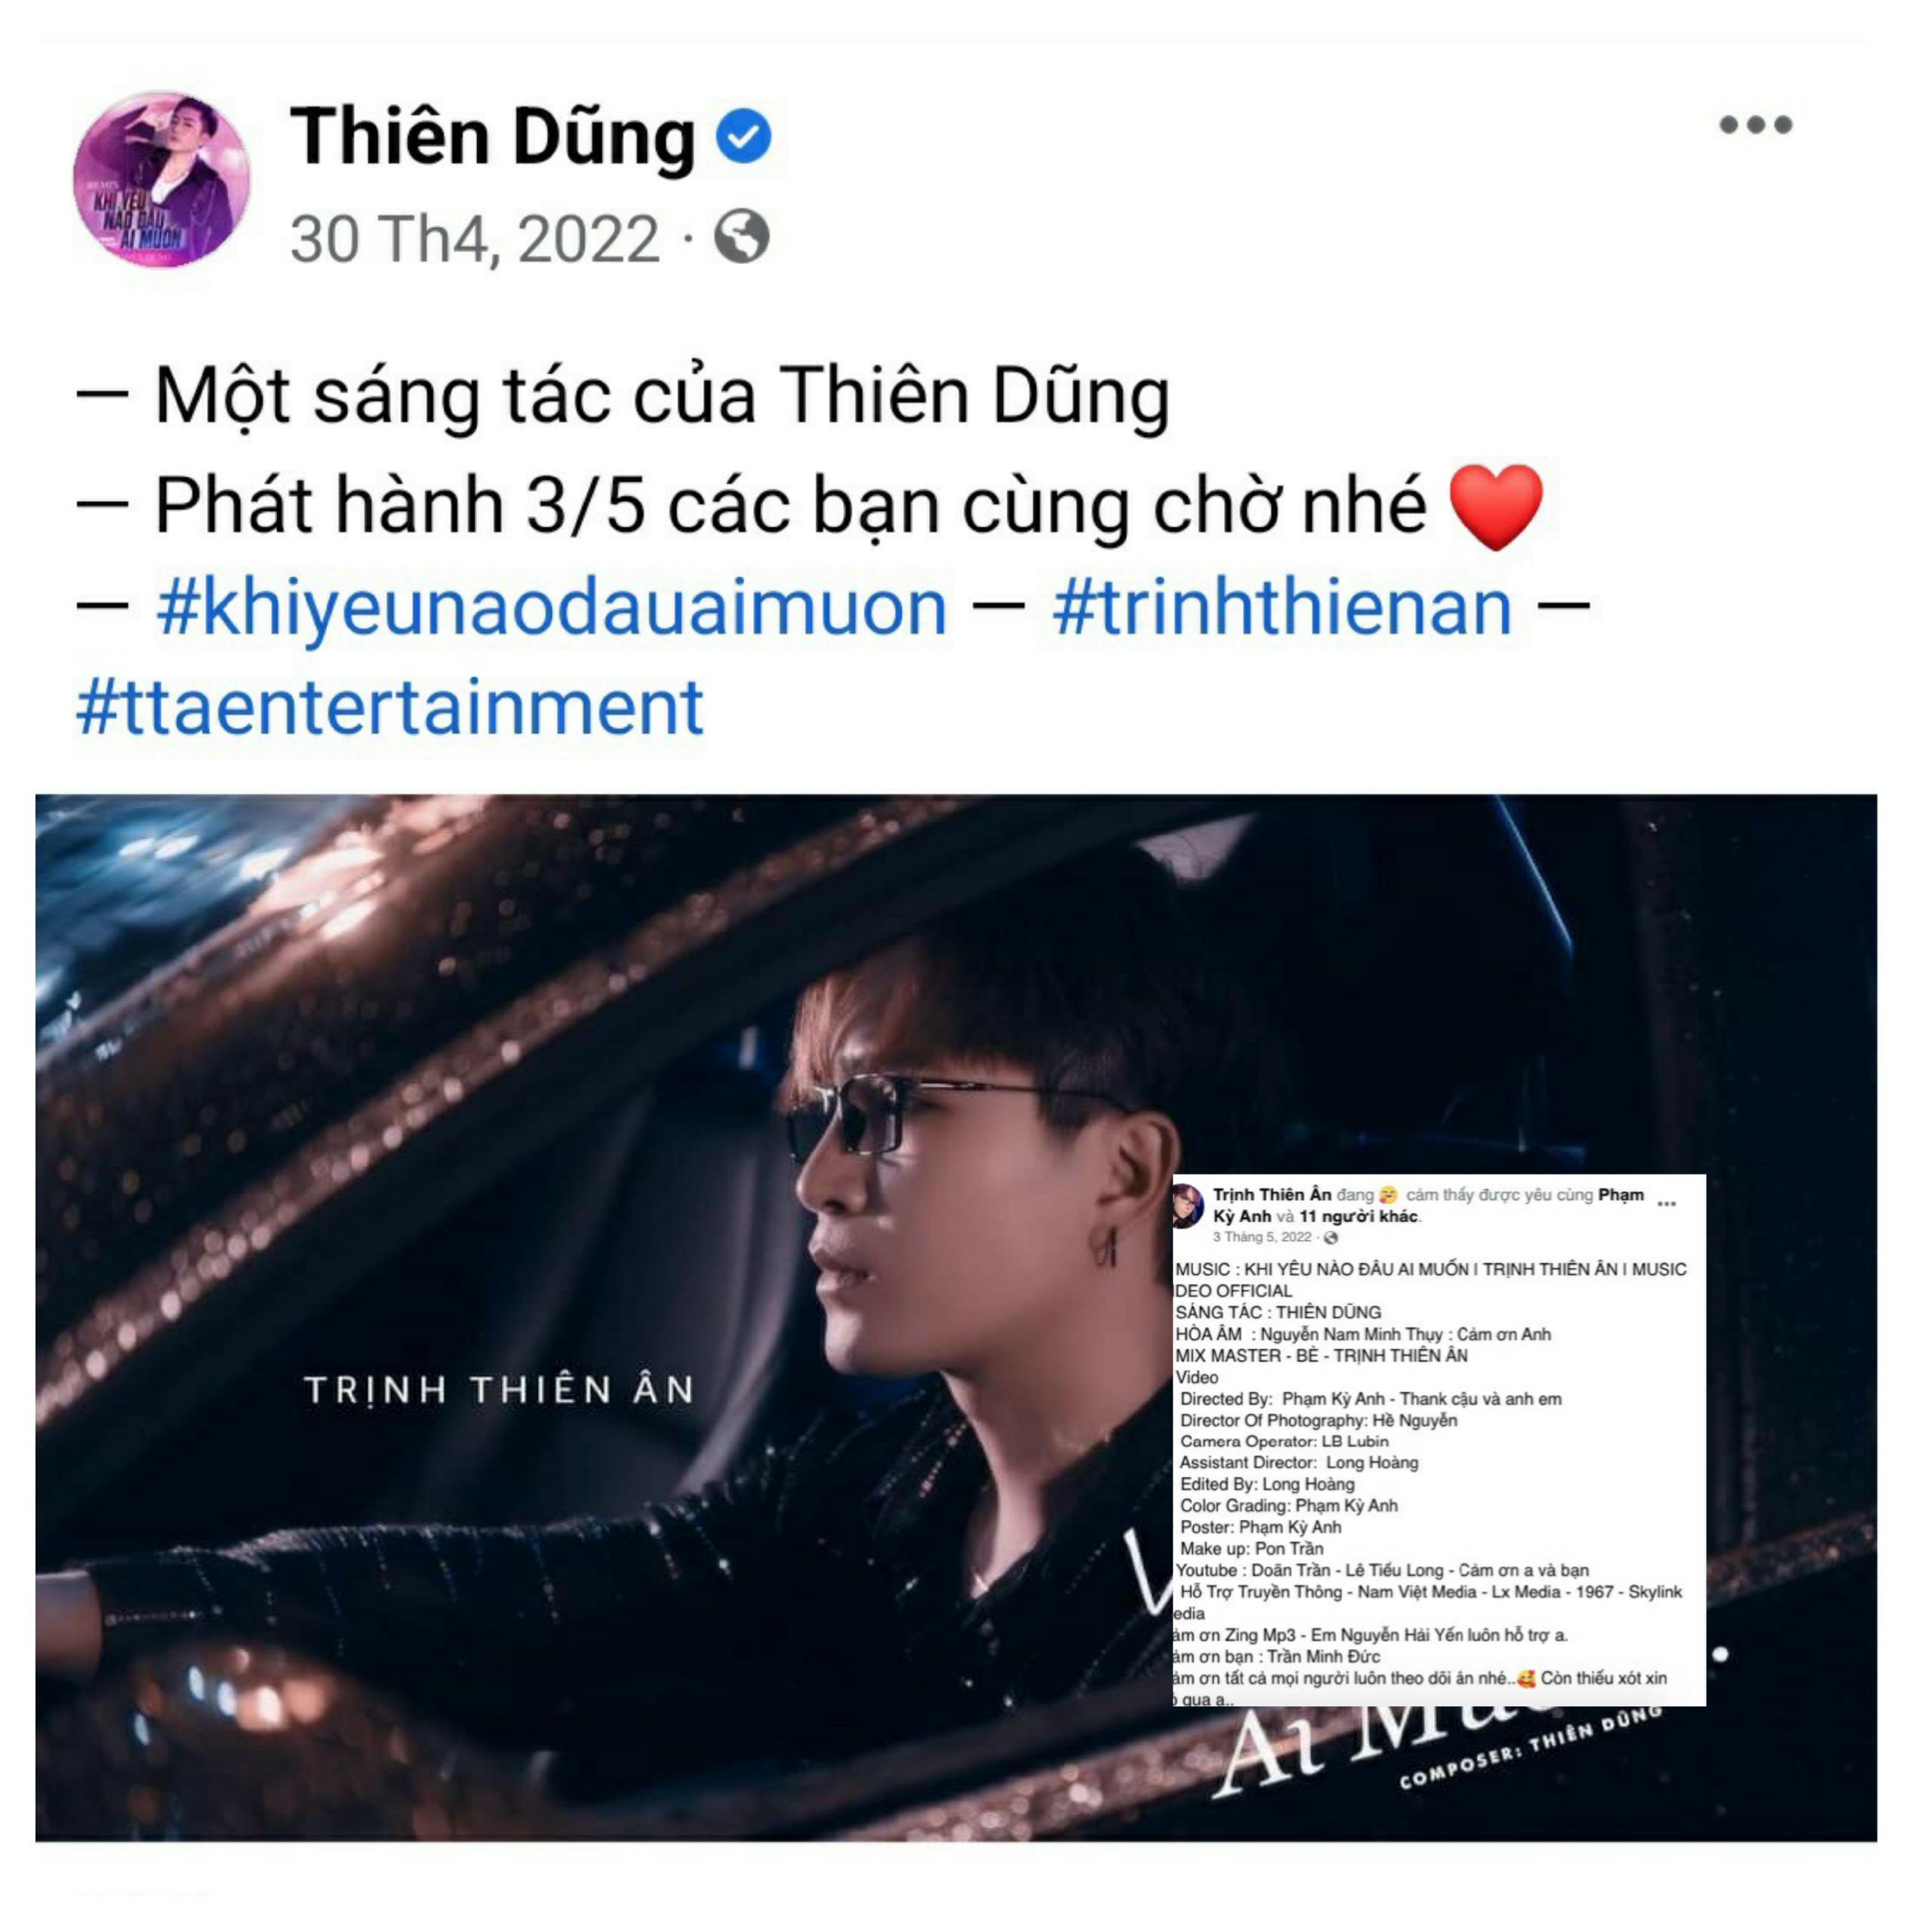 Nhạc sĩ Thiên Dũng và ca sĩ Trịnh Thiên Ân từng công bố khi chuẩn bị phát hành bài hát vào năm 2022 (Nguồn Facebook)